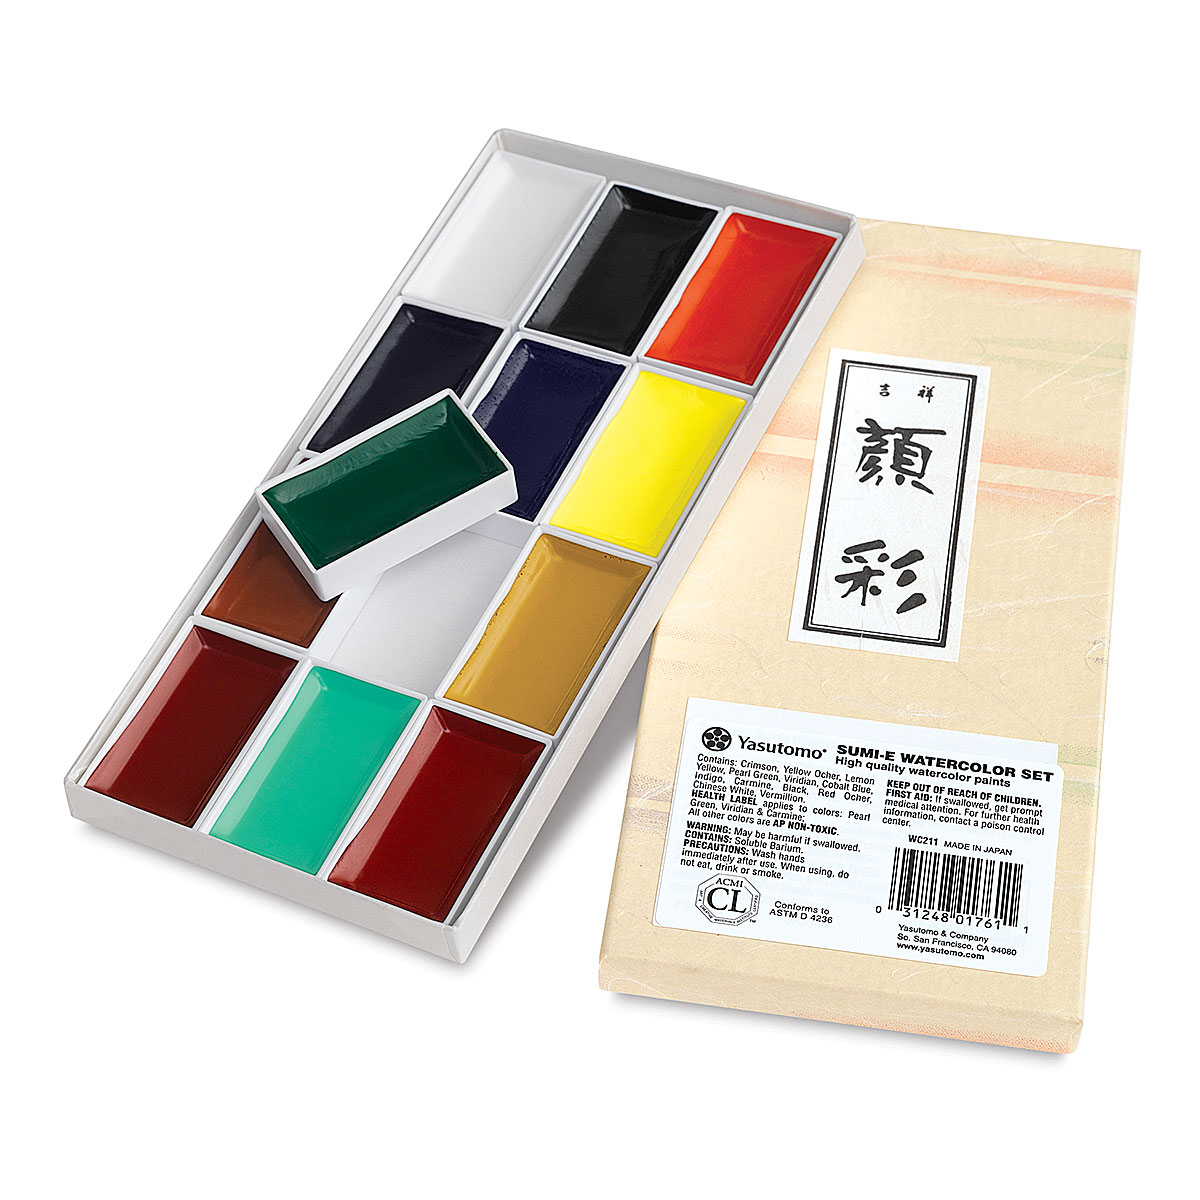 Yasutomo Sumie Watercolor Pan Sets